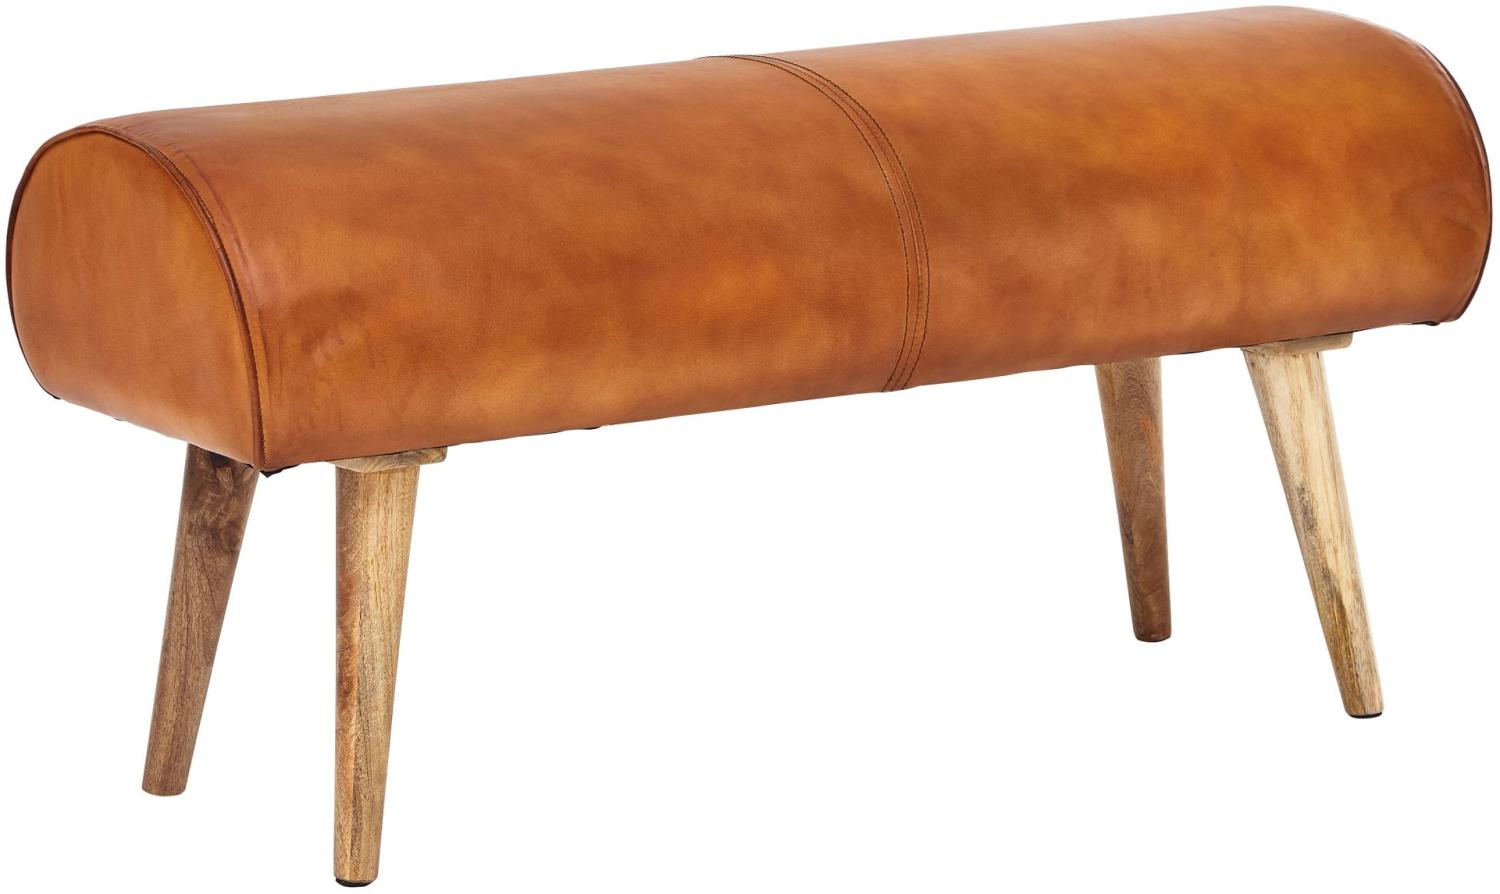 KADIMA DESIGN Sitzbank aus Holz und Echtleder - Moderne, stilvolle Sitzgelegenheit für 2 Personen. Bild 1